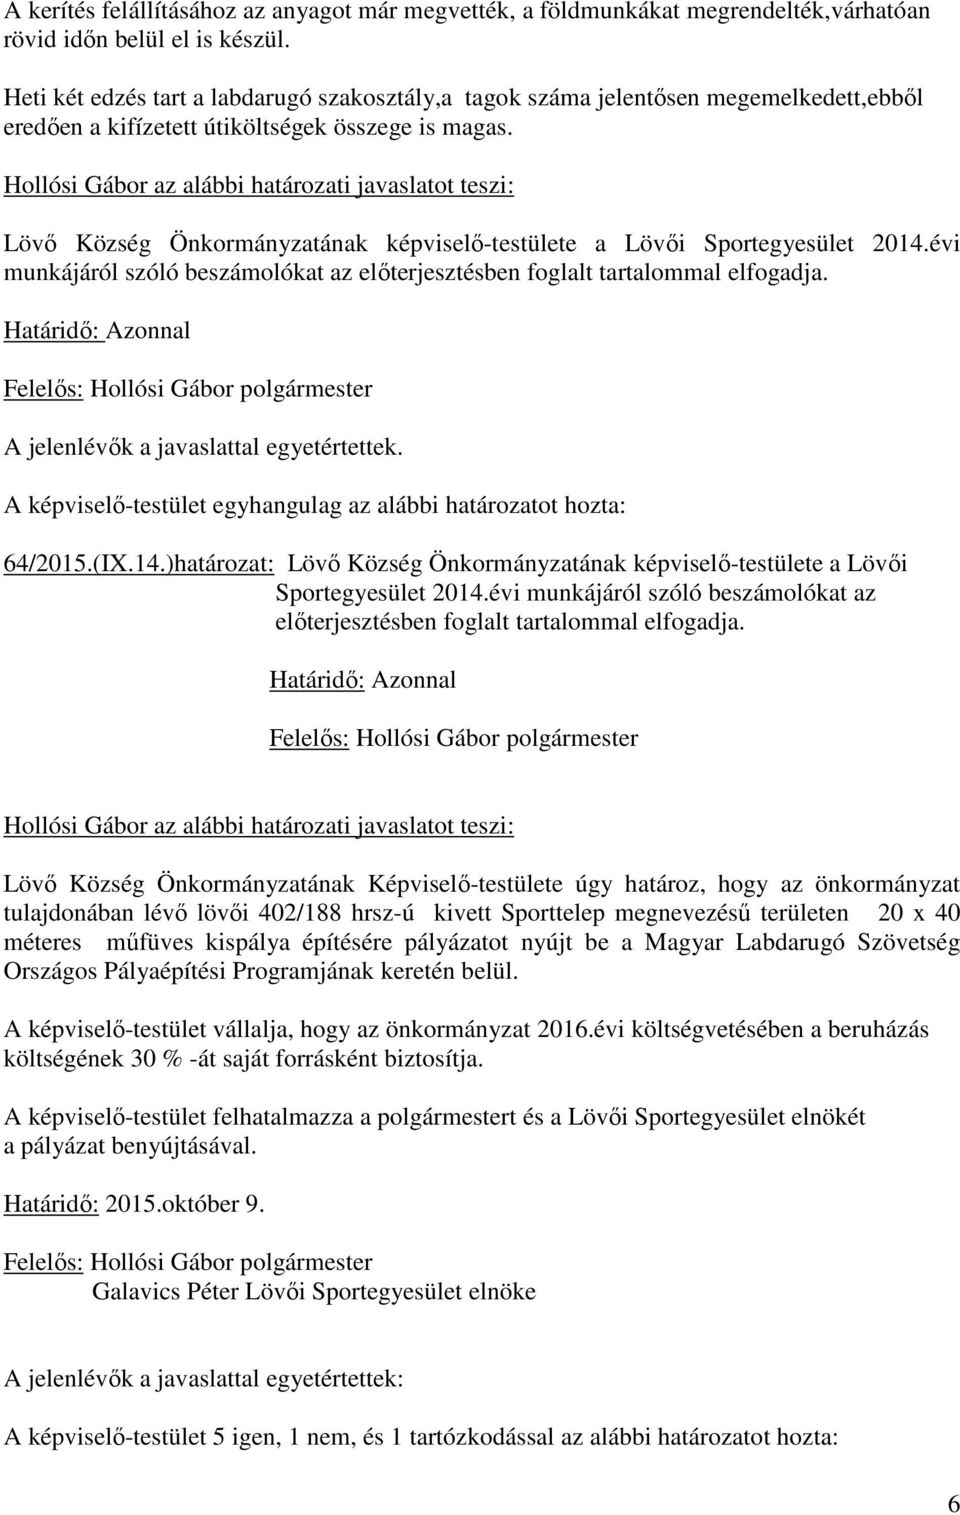 Hollósi Gábor az alábbi határozati javaslatot teszi: Lövő Község Önkormányzatának képviselő-testülete a Lövői Sportegyesület 2014.